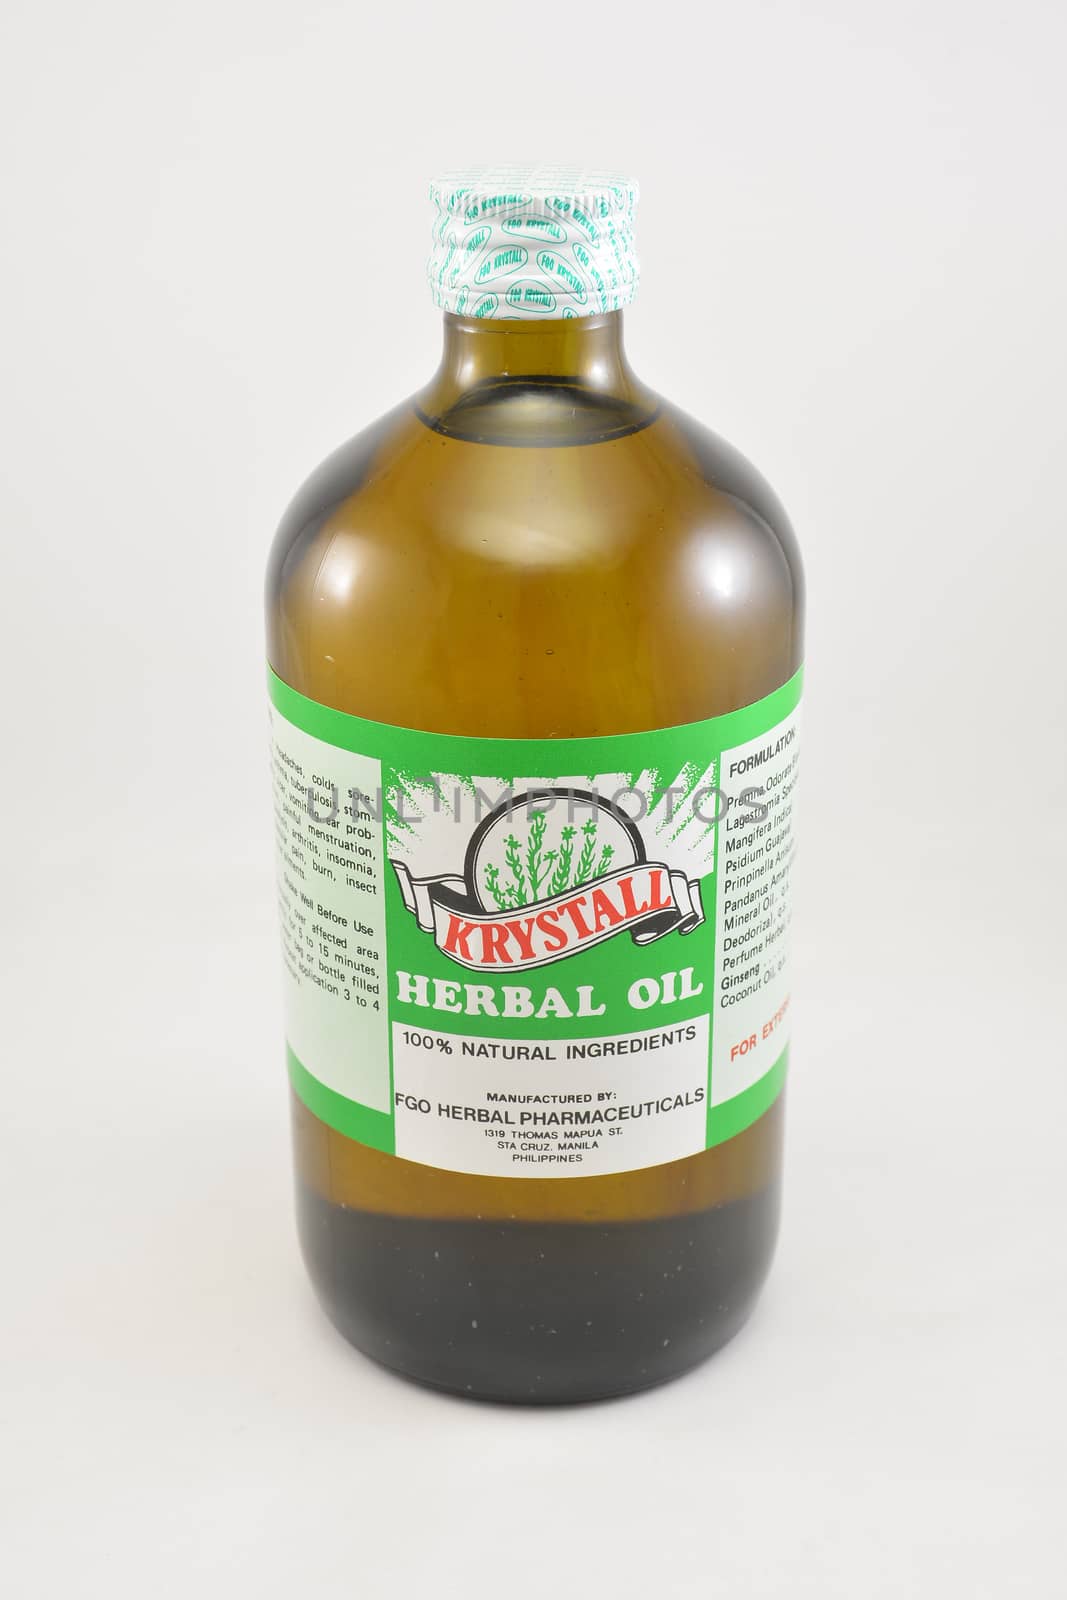 MANILA, PH - SEPT 10 - Krystall herbal oil bottle on September 10, 2020 in Manila, Philippines.